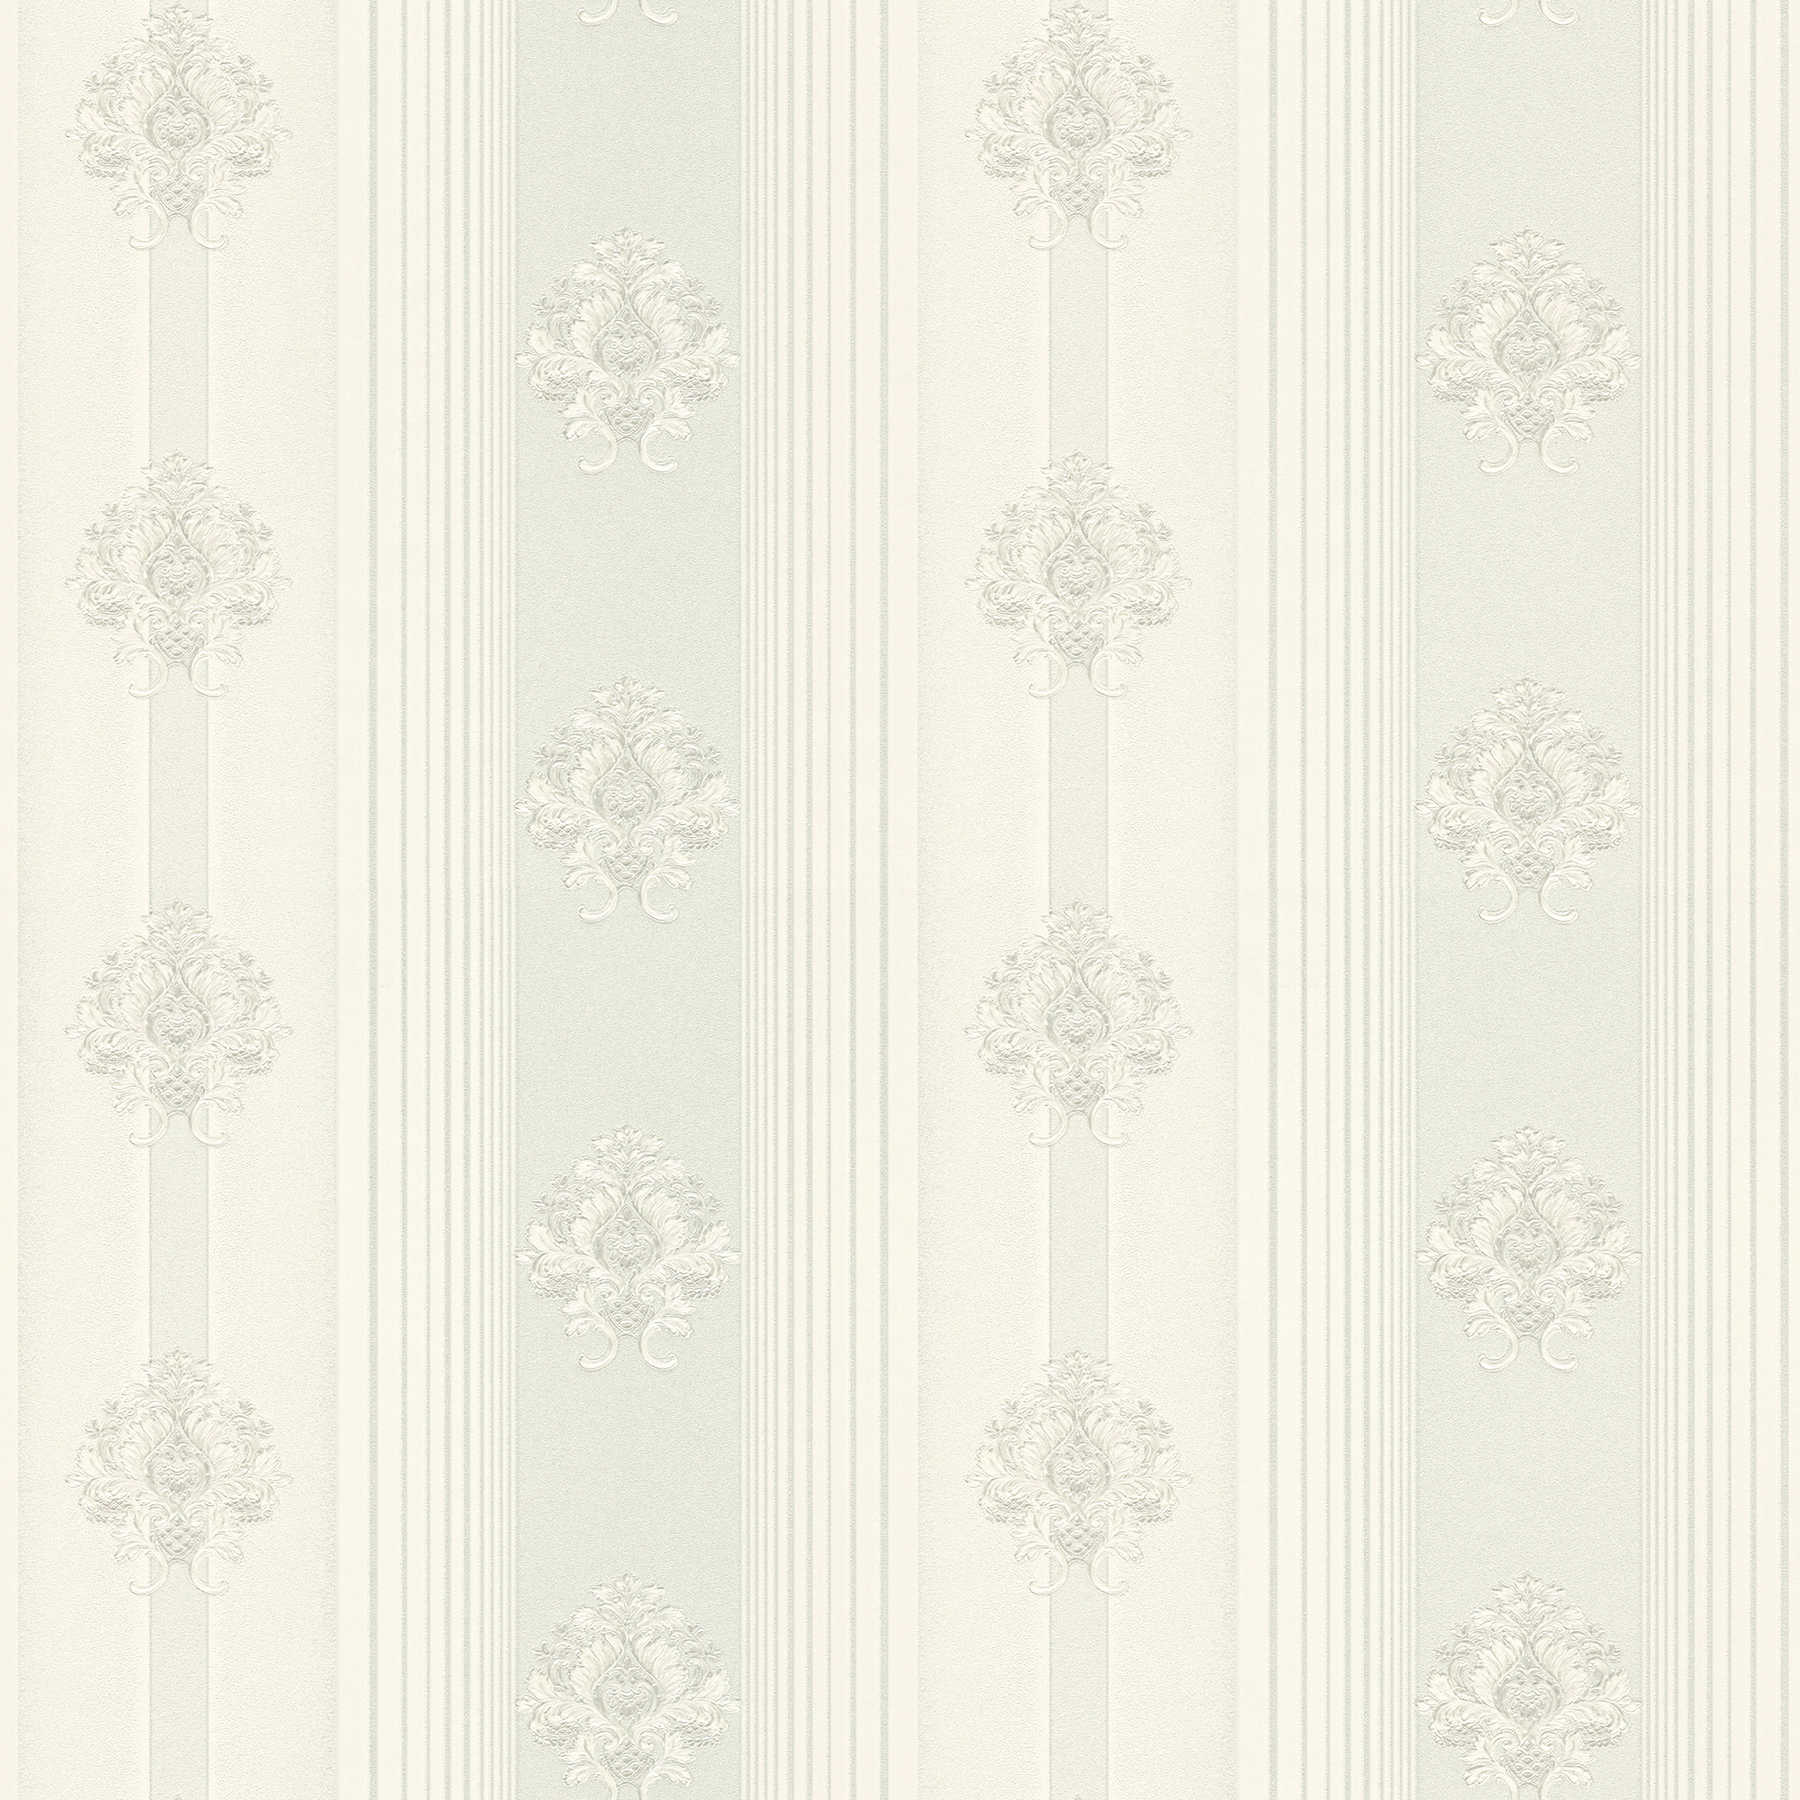 Carta da parati in tessuto non tessuto a strisce e ornamenti con accenti metallici - argento, bianco
